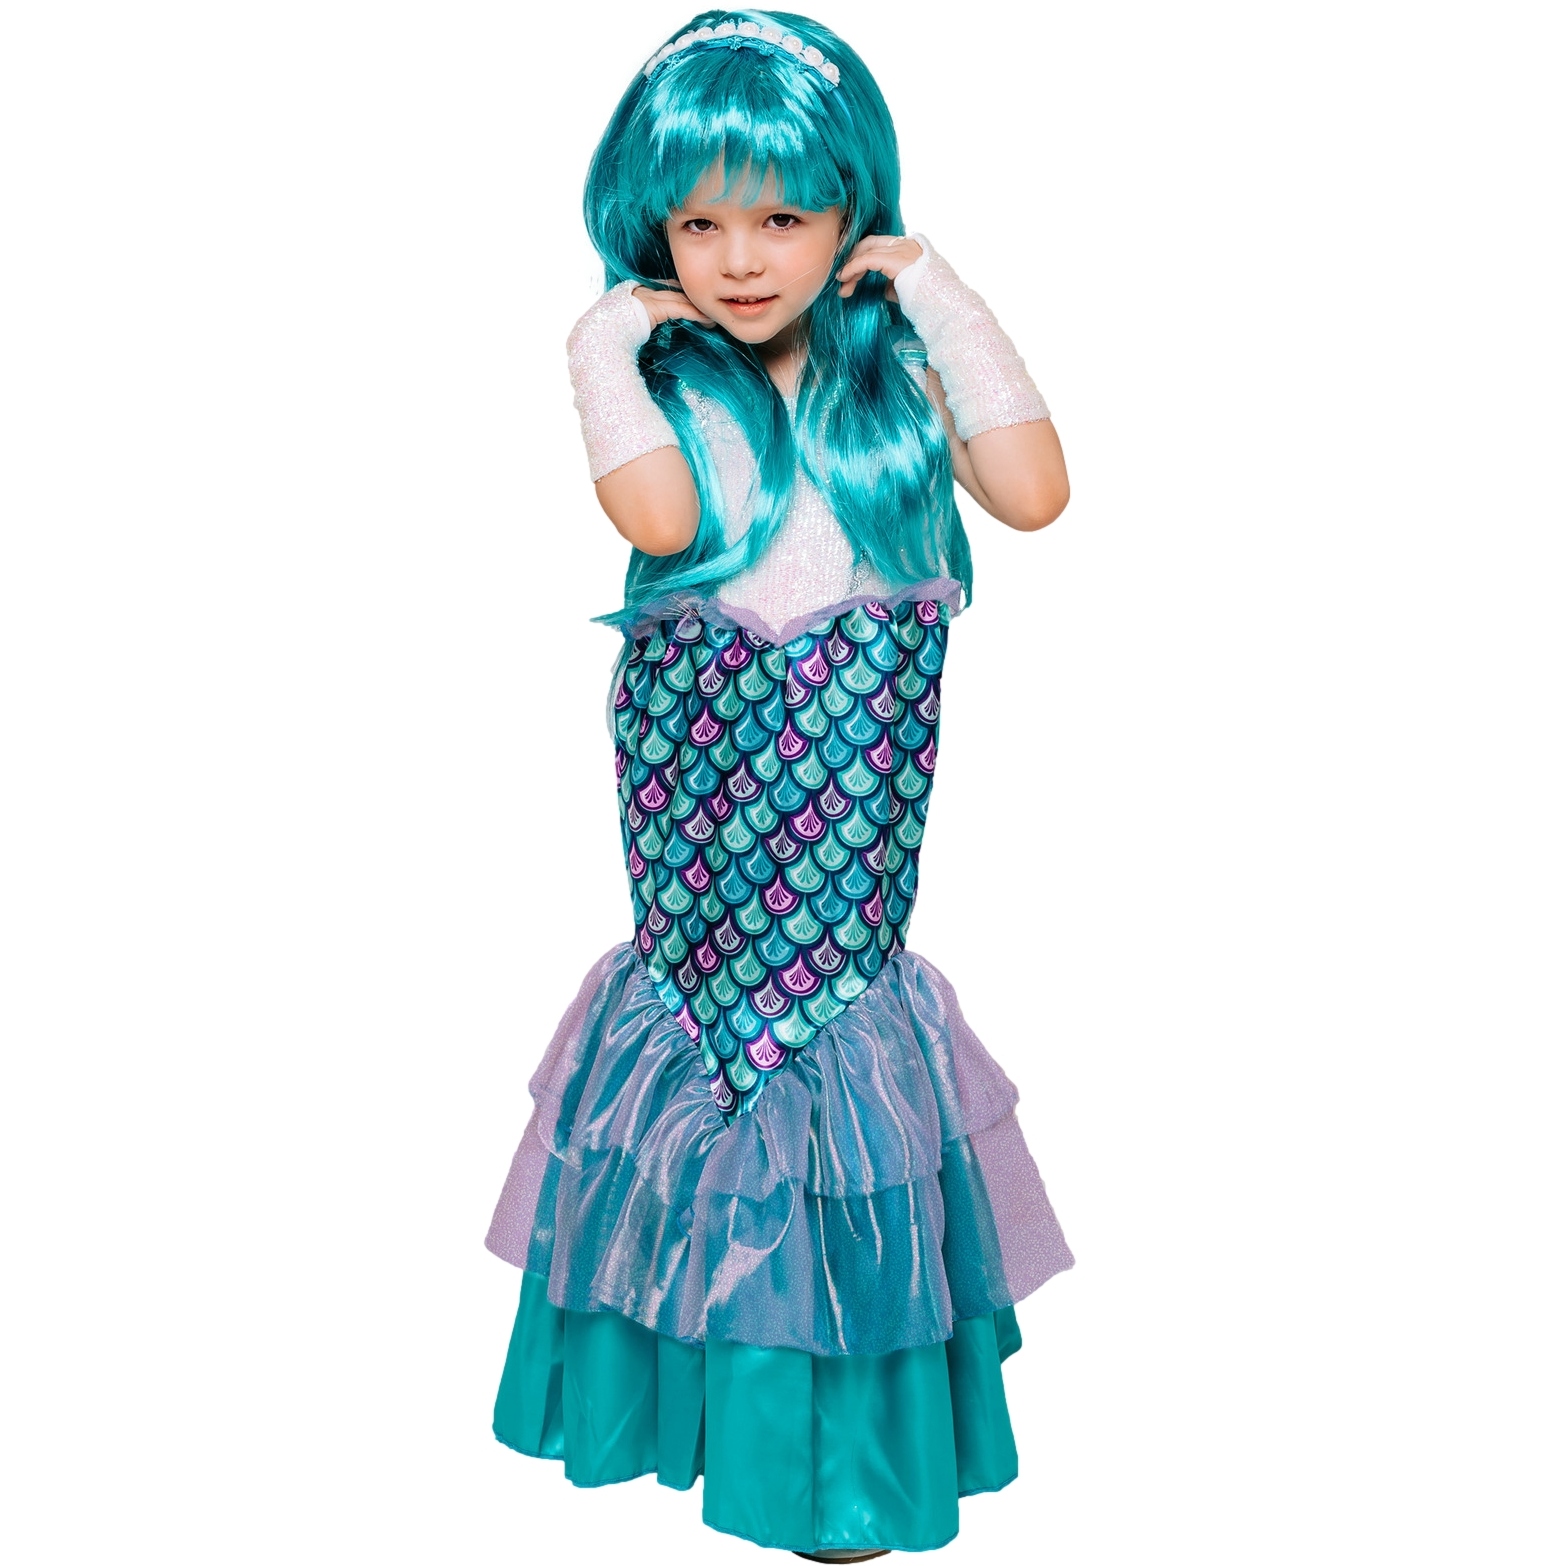 Карнавальный костюм "Русалка" (платье, ободок, перчатки, парик) размер 134-68